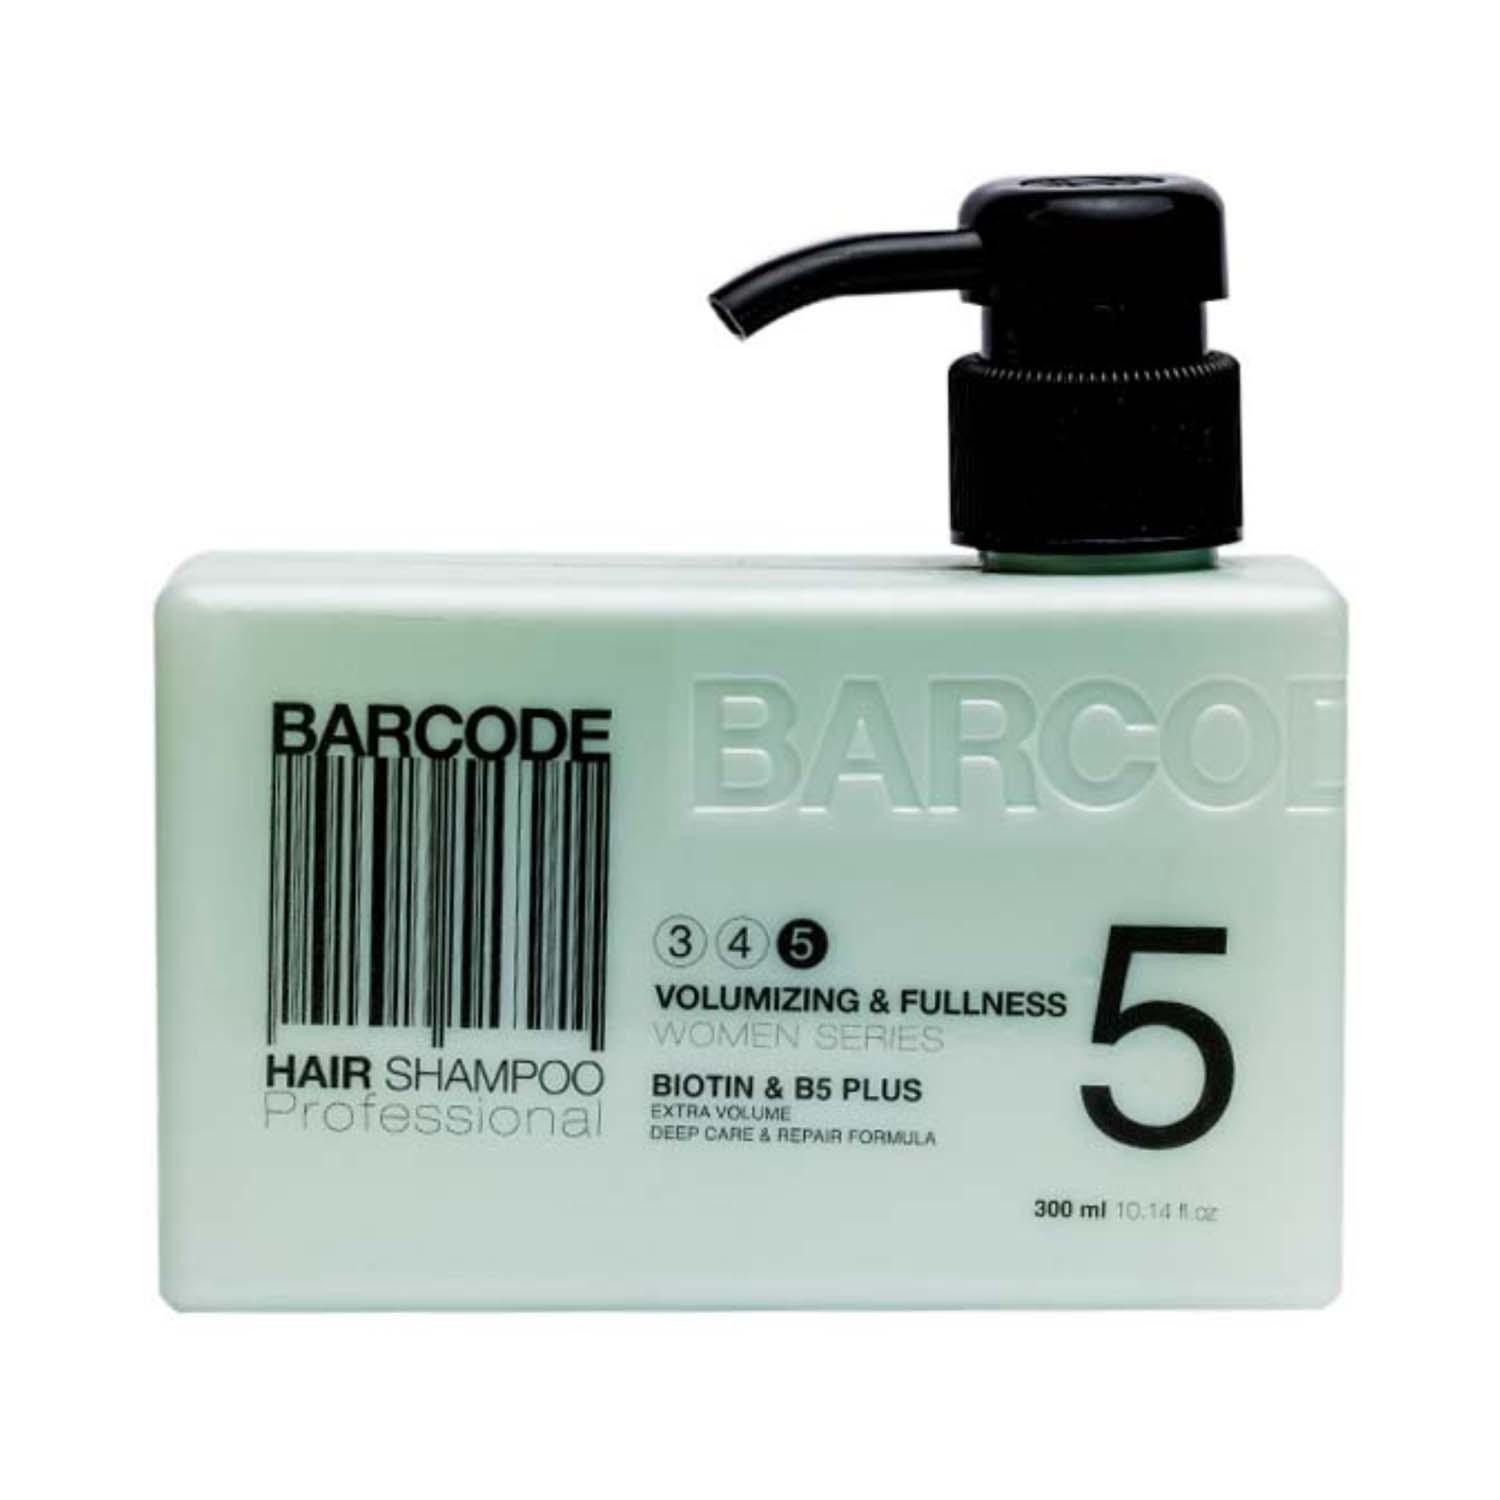 Barcode Professional | Barcode Professional Volumizing & Fullness Hair Shampoo - BCSH003 (300 ml)